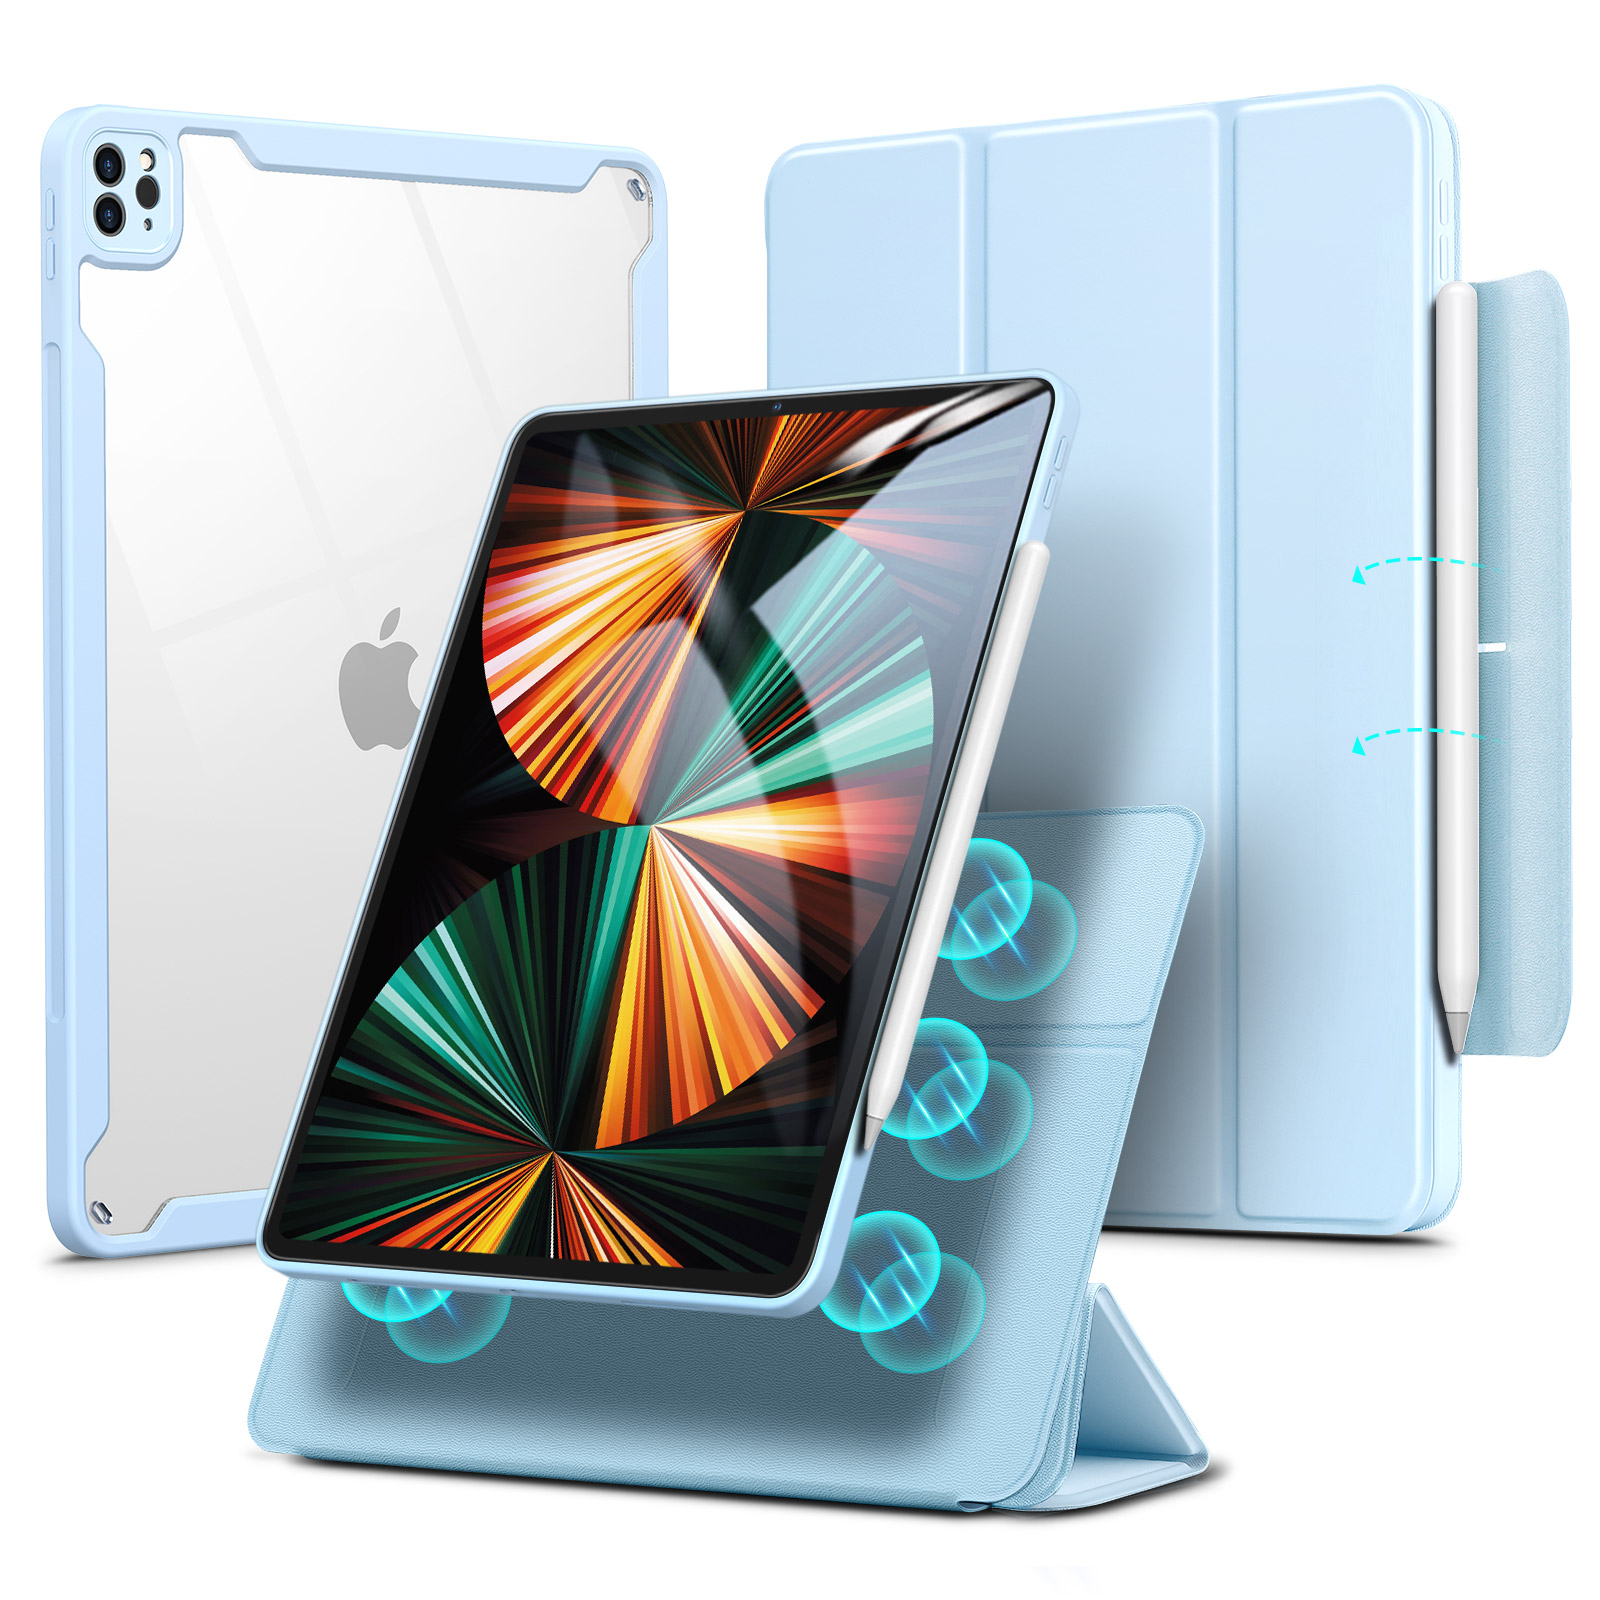 iPad Pro Cases – SALAVISA